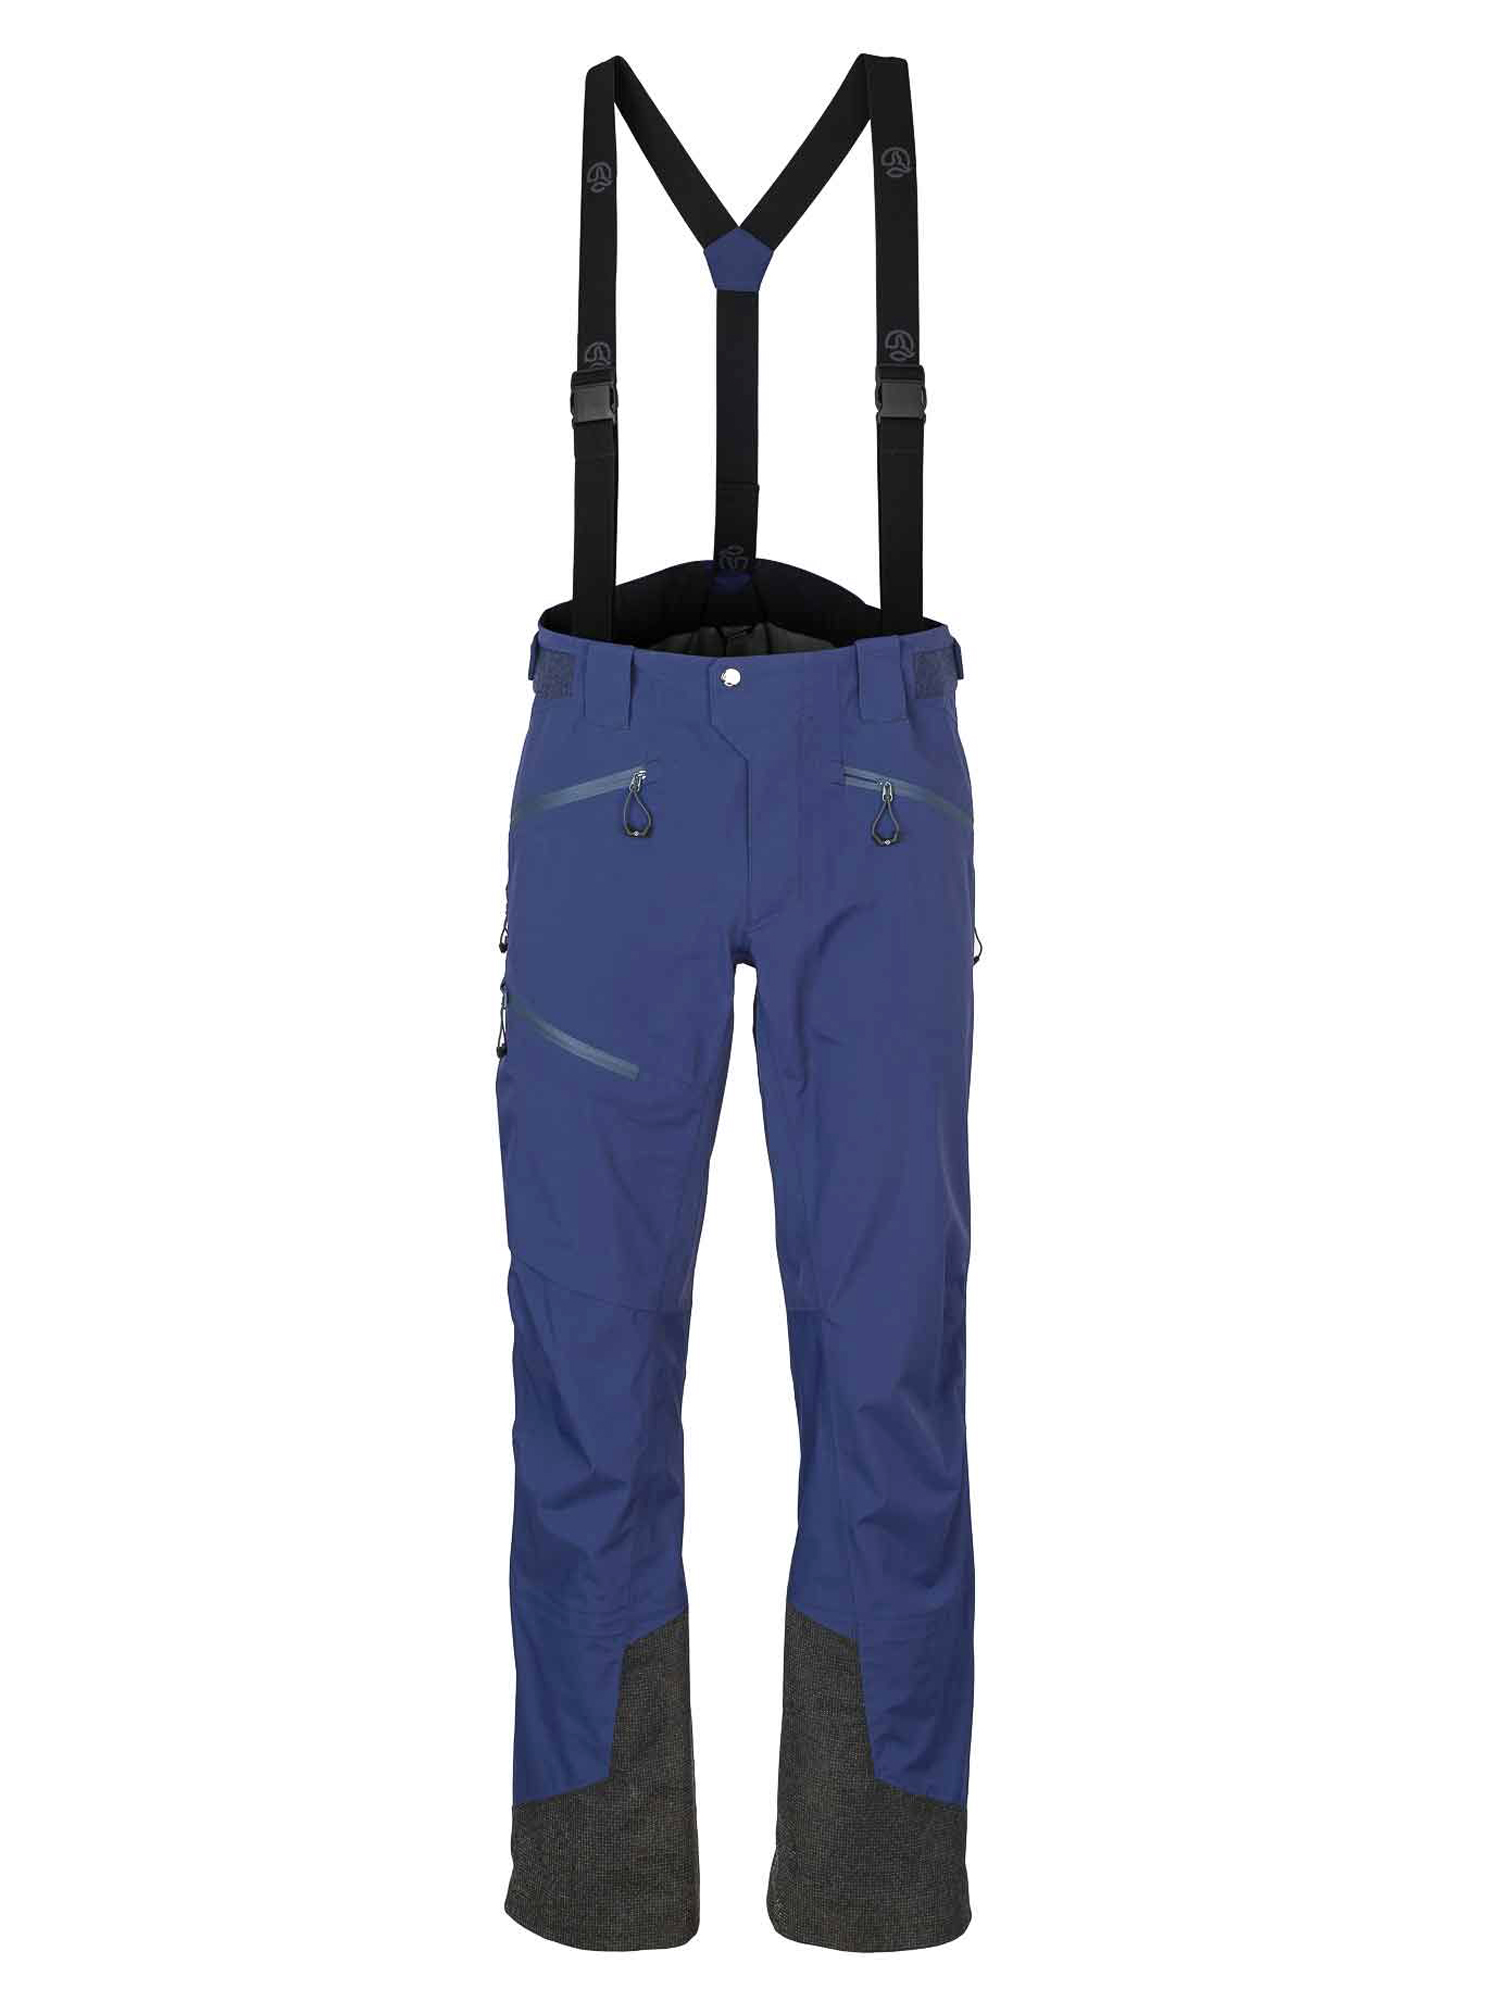 Спортивные брюки мужские Ternua Pantalon Rakaposhi Pt M синие 2XL